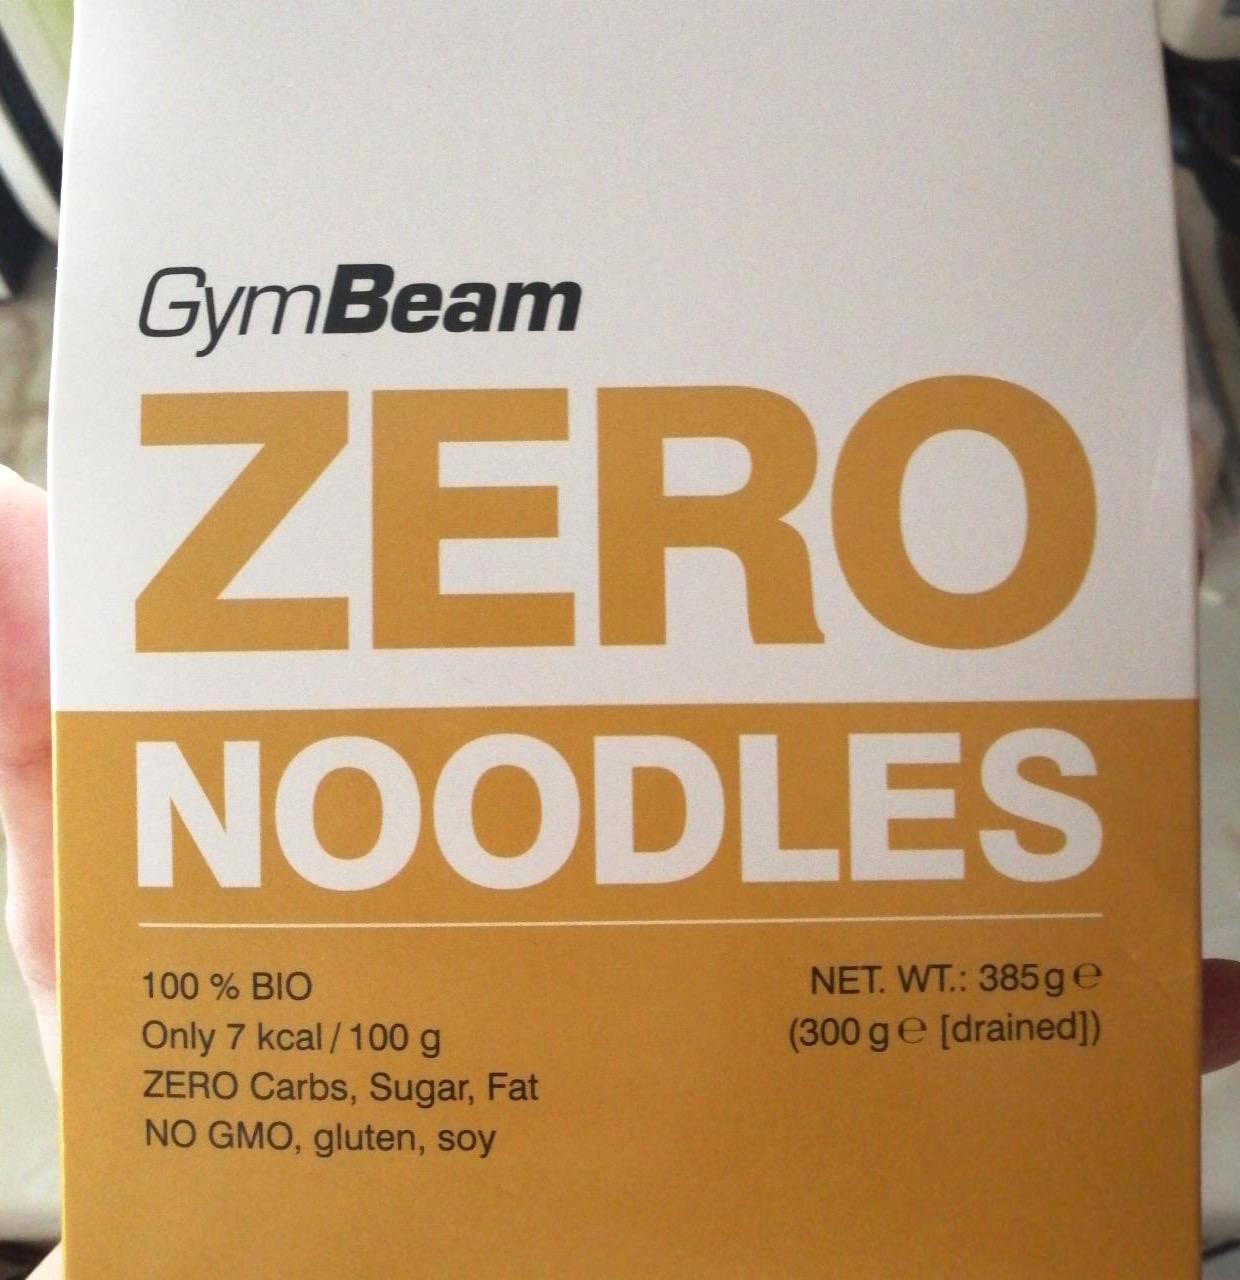 Képek - Zero noodles GymBeam